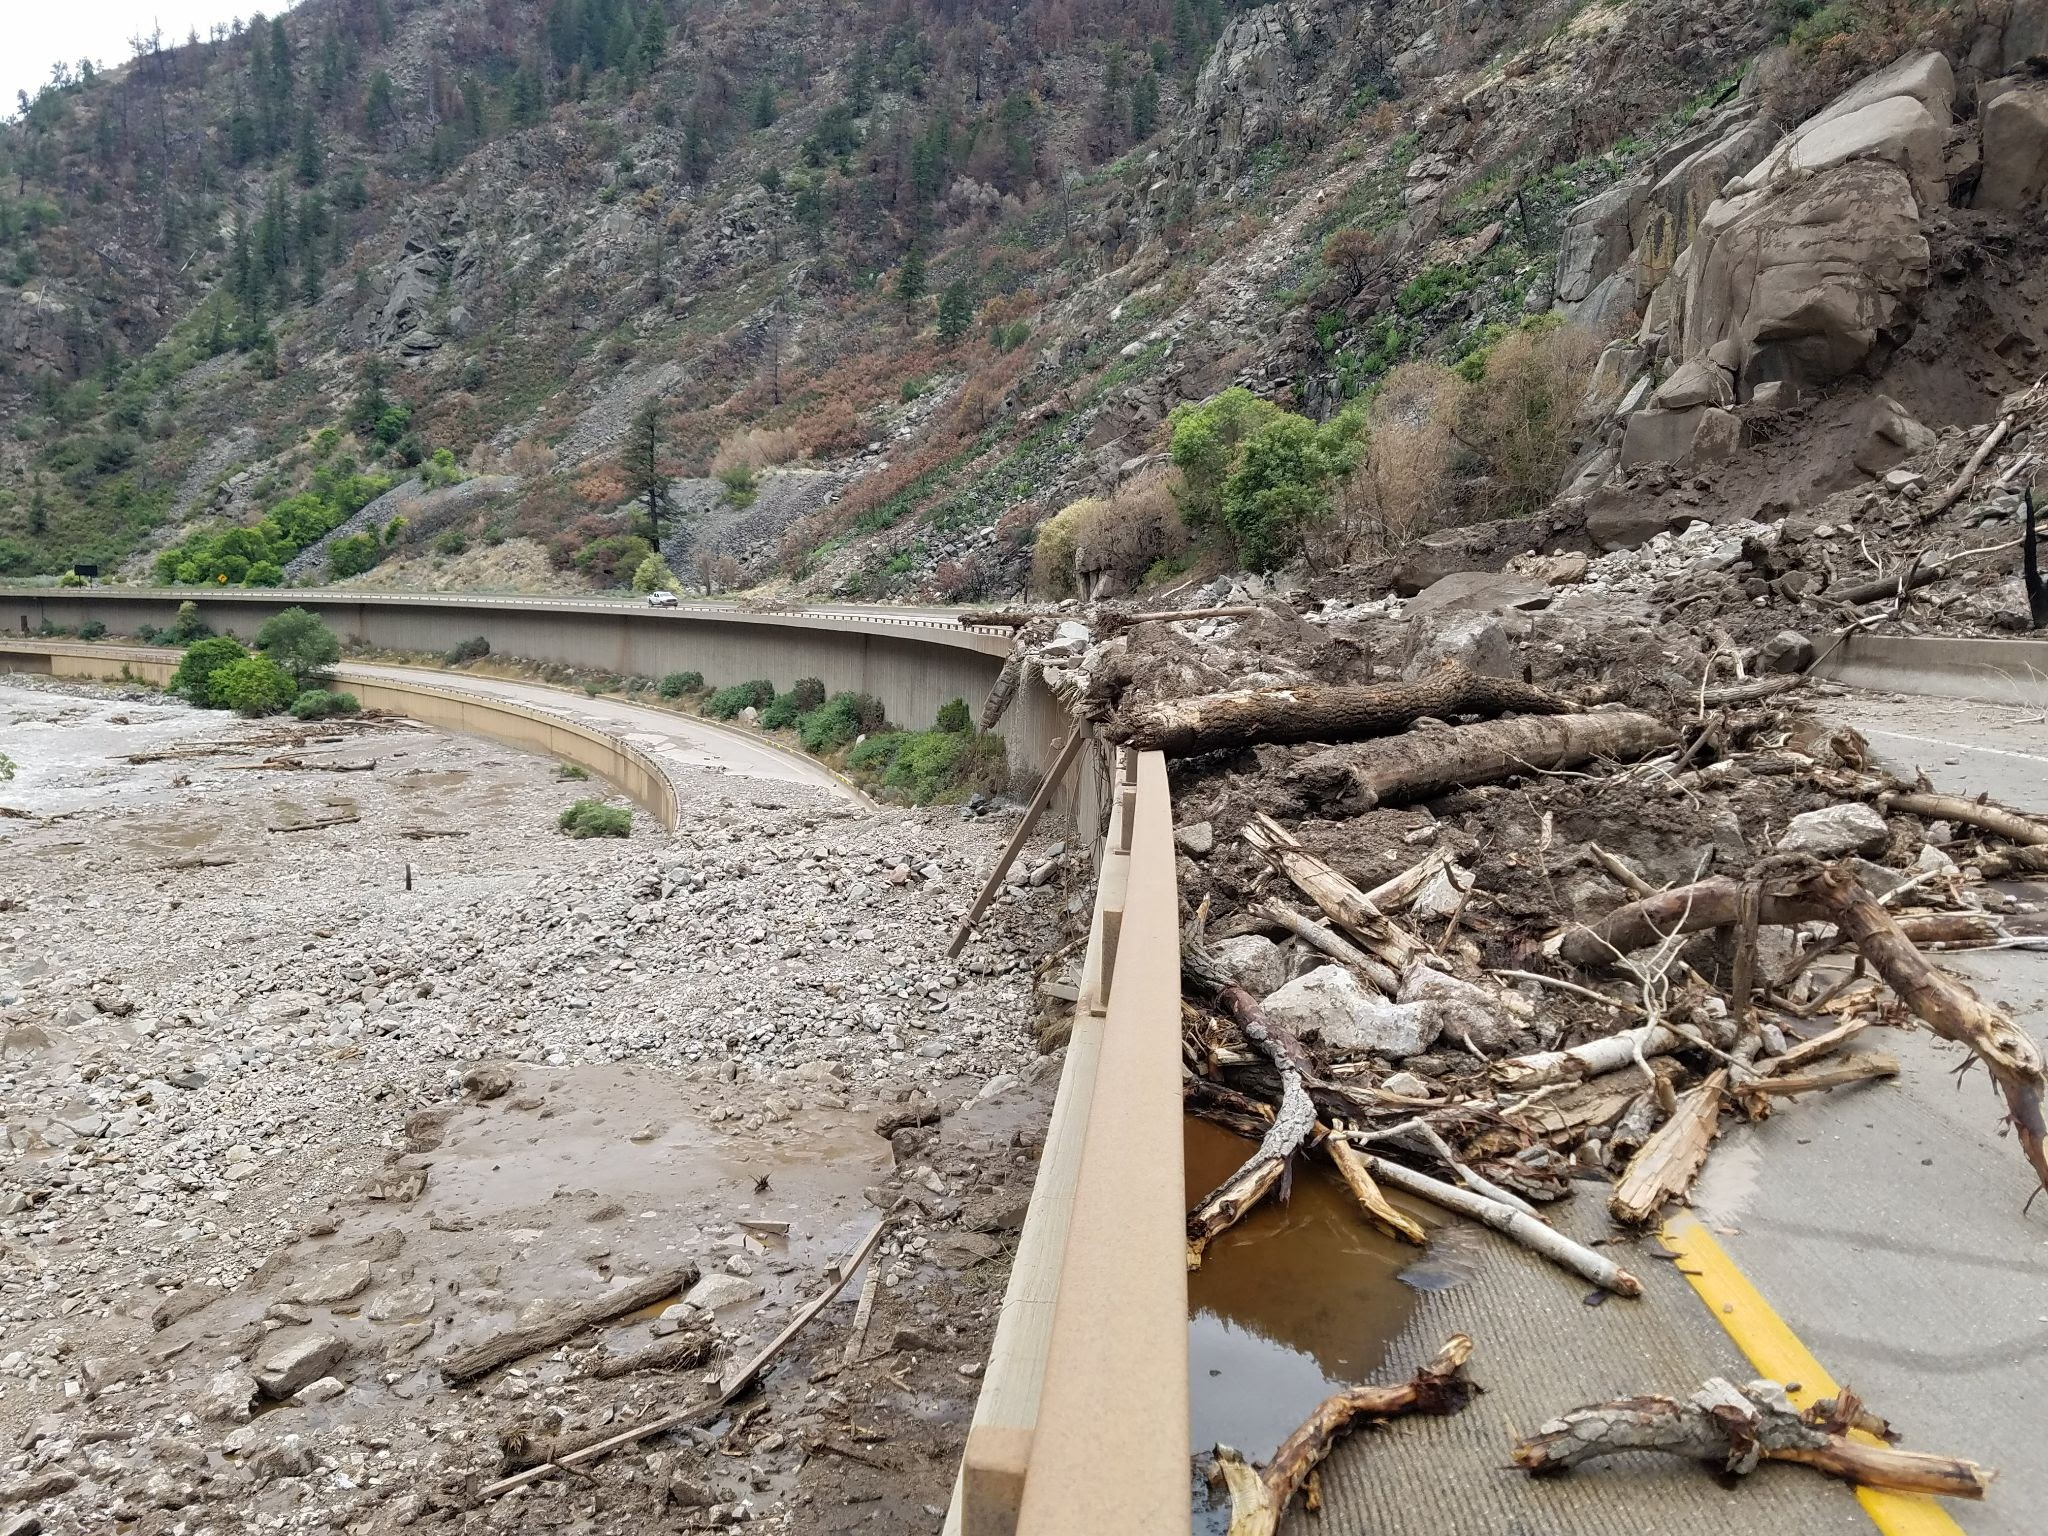 Glenwood Canyon mudslide debris on the roadway detail image